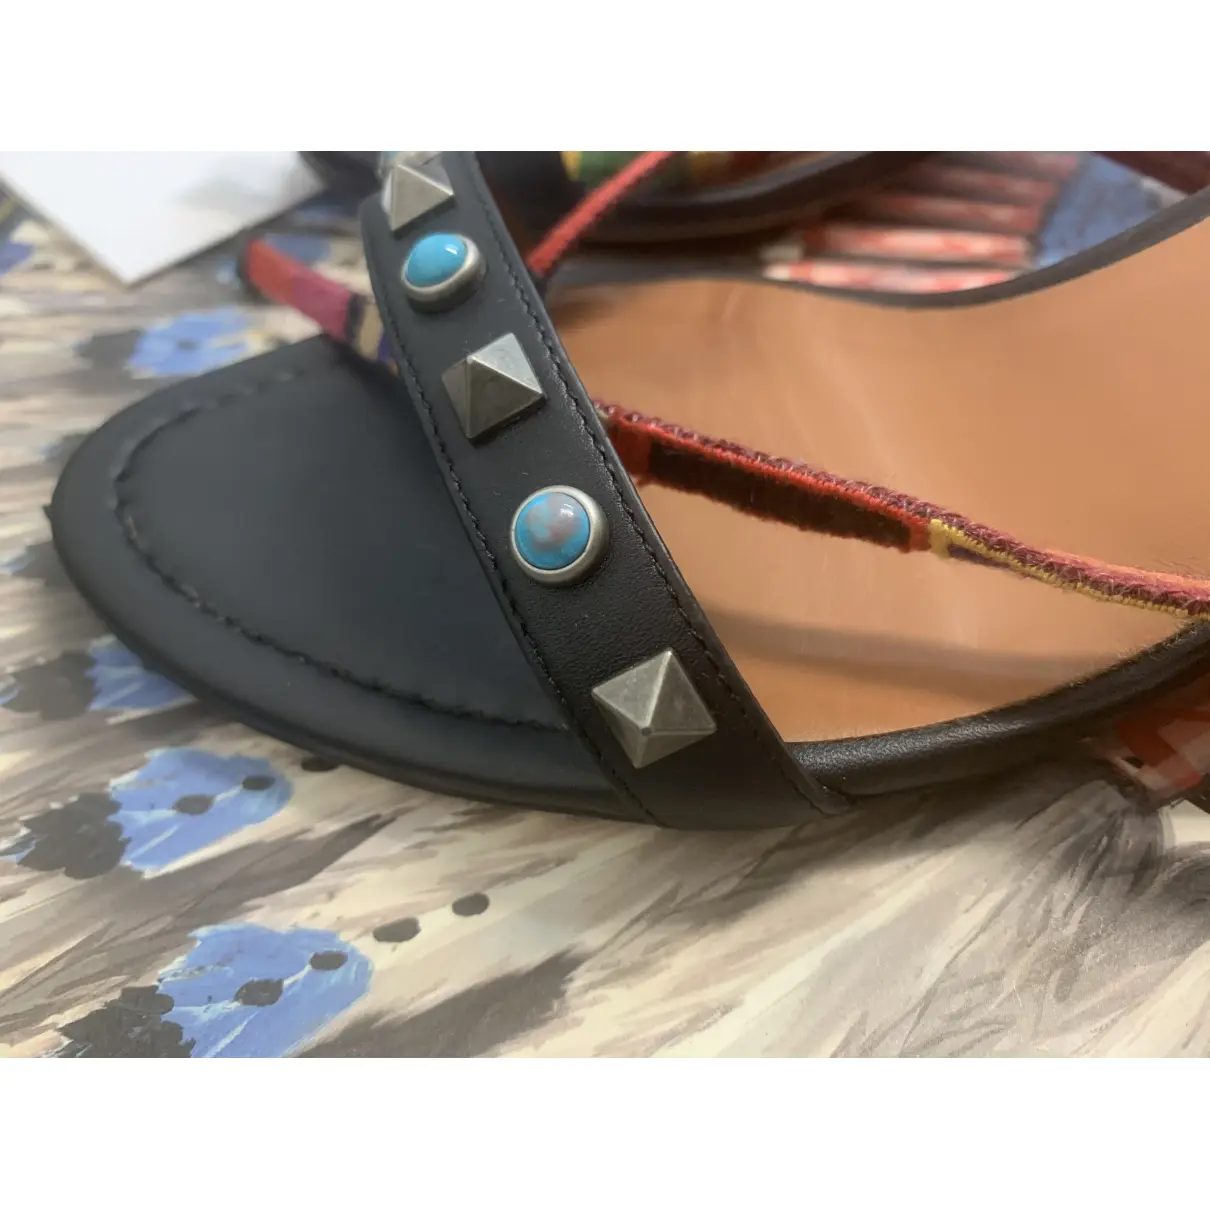 Rockstud leather sandal Valentino Garavani